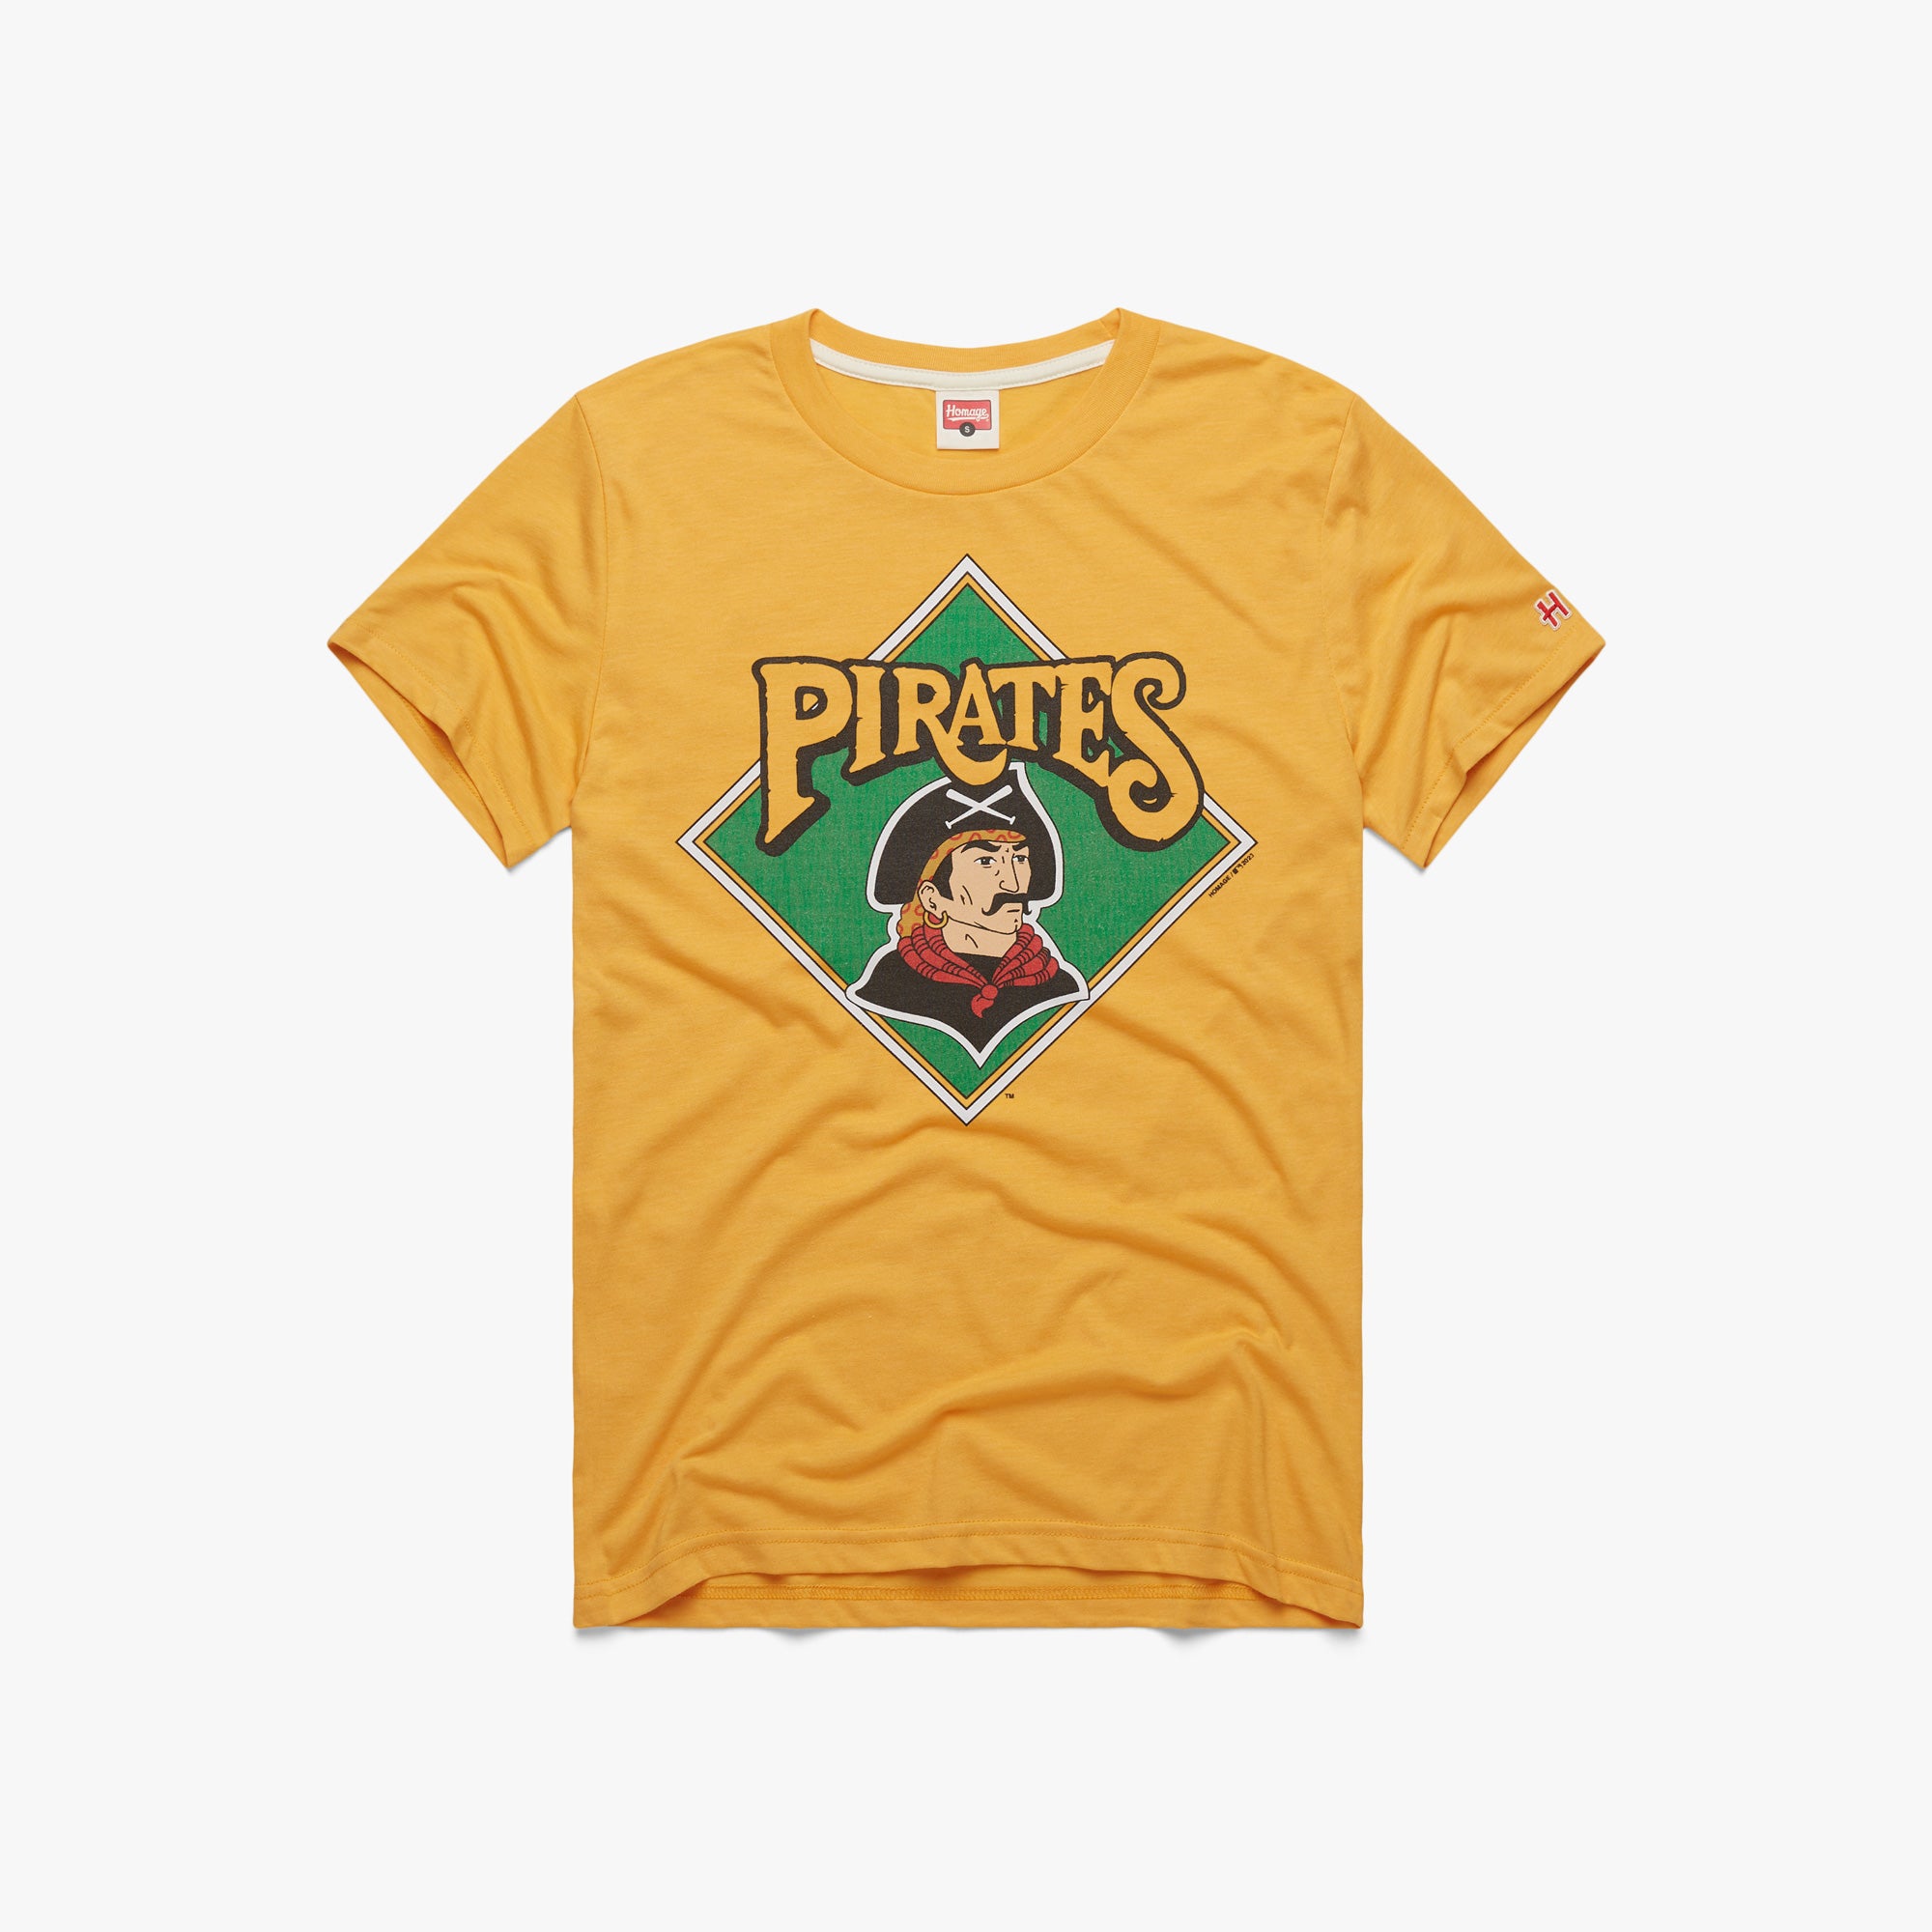 38 Pittsburgh Pirates Starter Orange Jersey XL